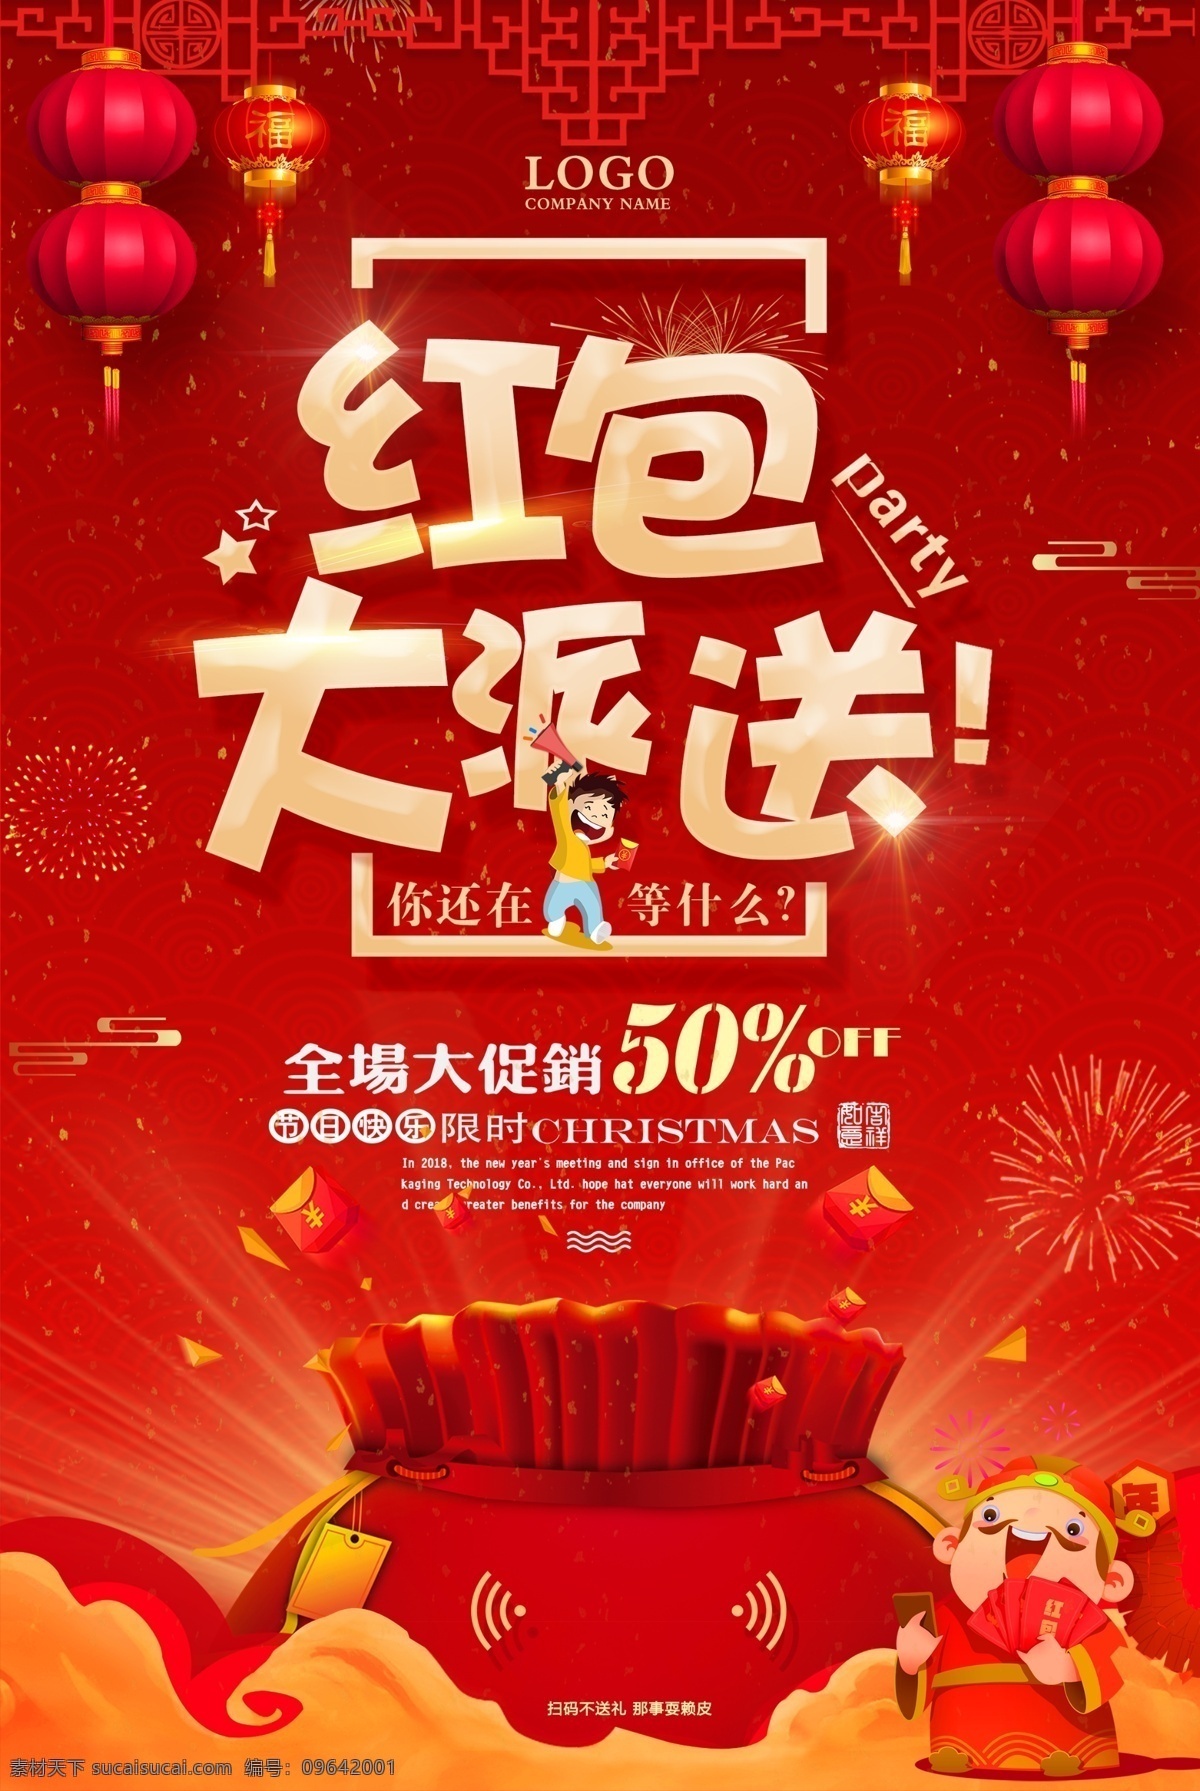 红包海报 红包 派送 灯笼 中国红 中国风 海报 创意 宣传